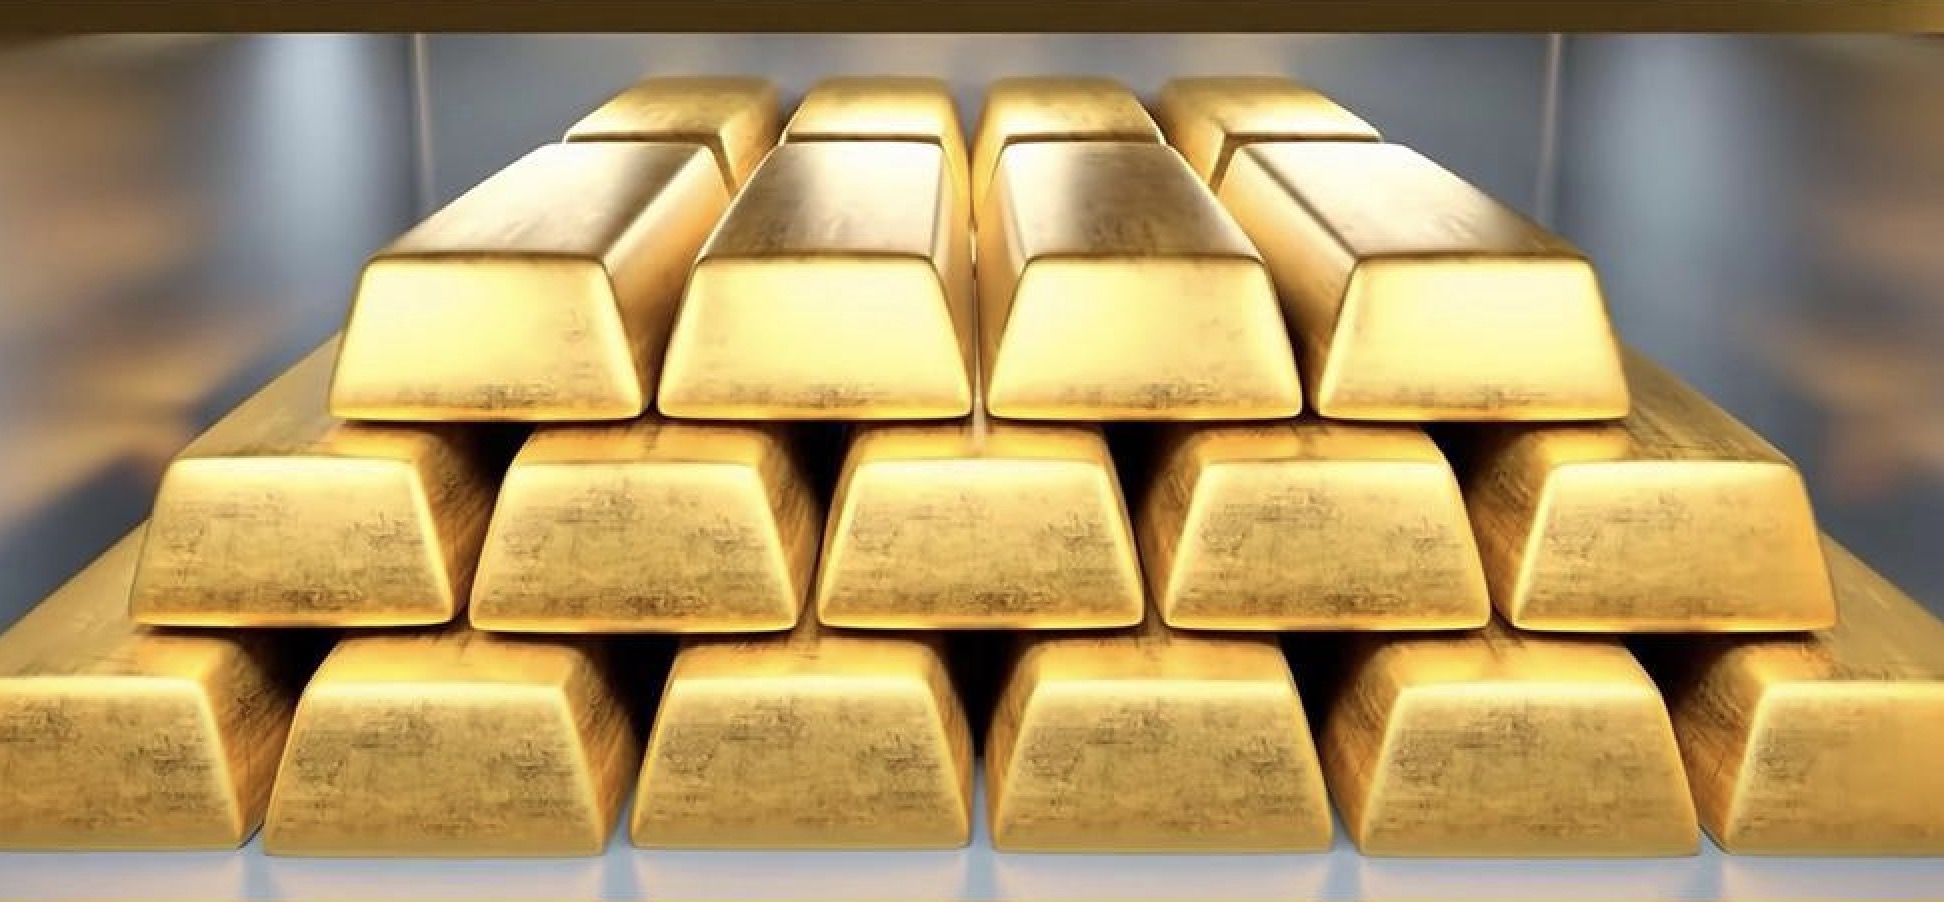 Pejabat The Fed yang paling “hawkish” memicu koreksi harga emas. Analis: Level support berikutnya adalah $2,300 per ounce.